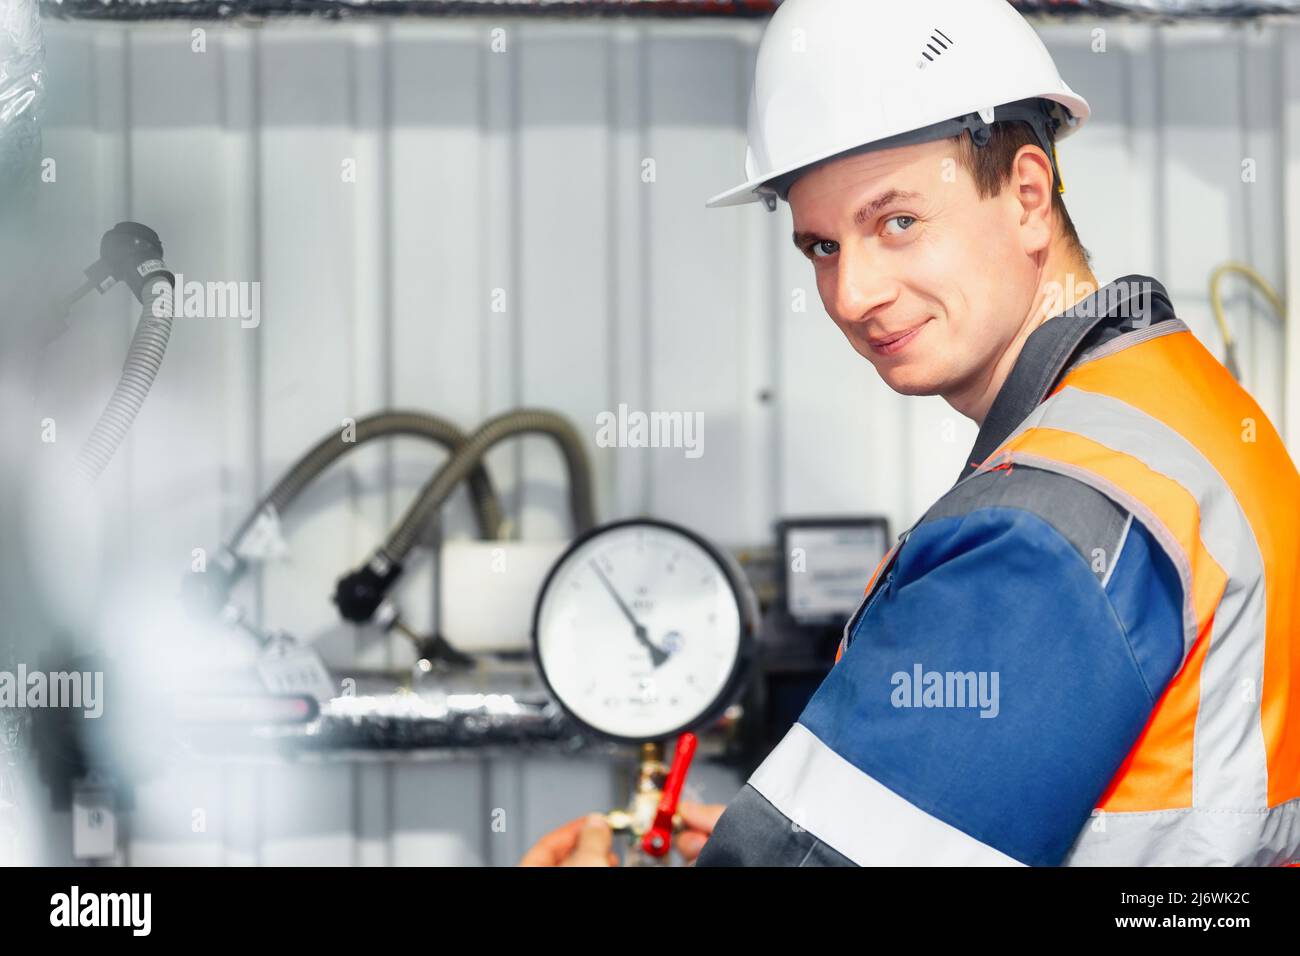 L'opérateur de la chaufferie à gaz dans le casque et les vêtements de travail regarde dans la caméra et sourit. Portrait d'un travailleur de l'industrie du gaz réel âgé de 30-40 ans. Maintenance de l'équipement de gaz. Banque D'Images